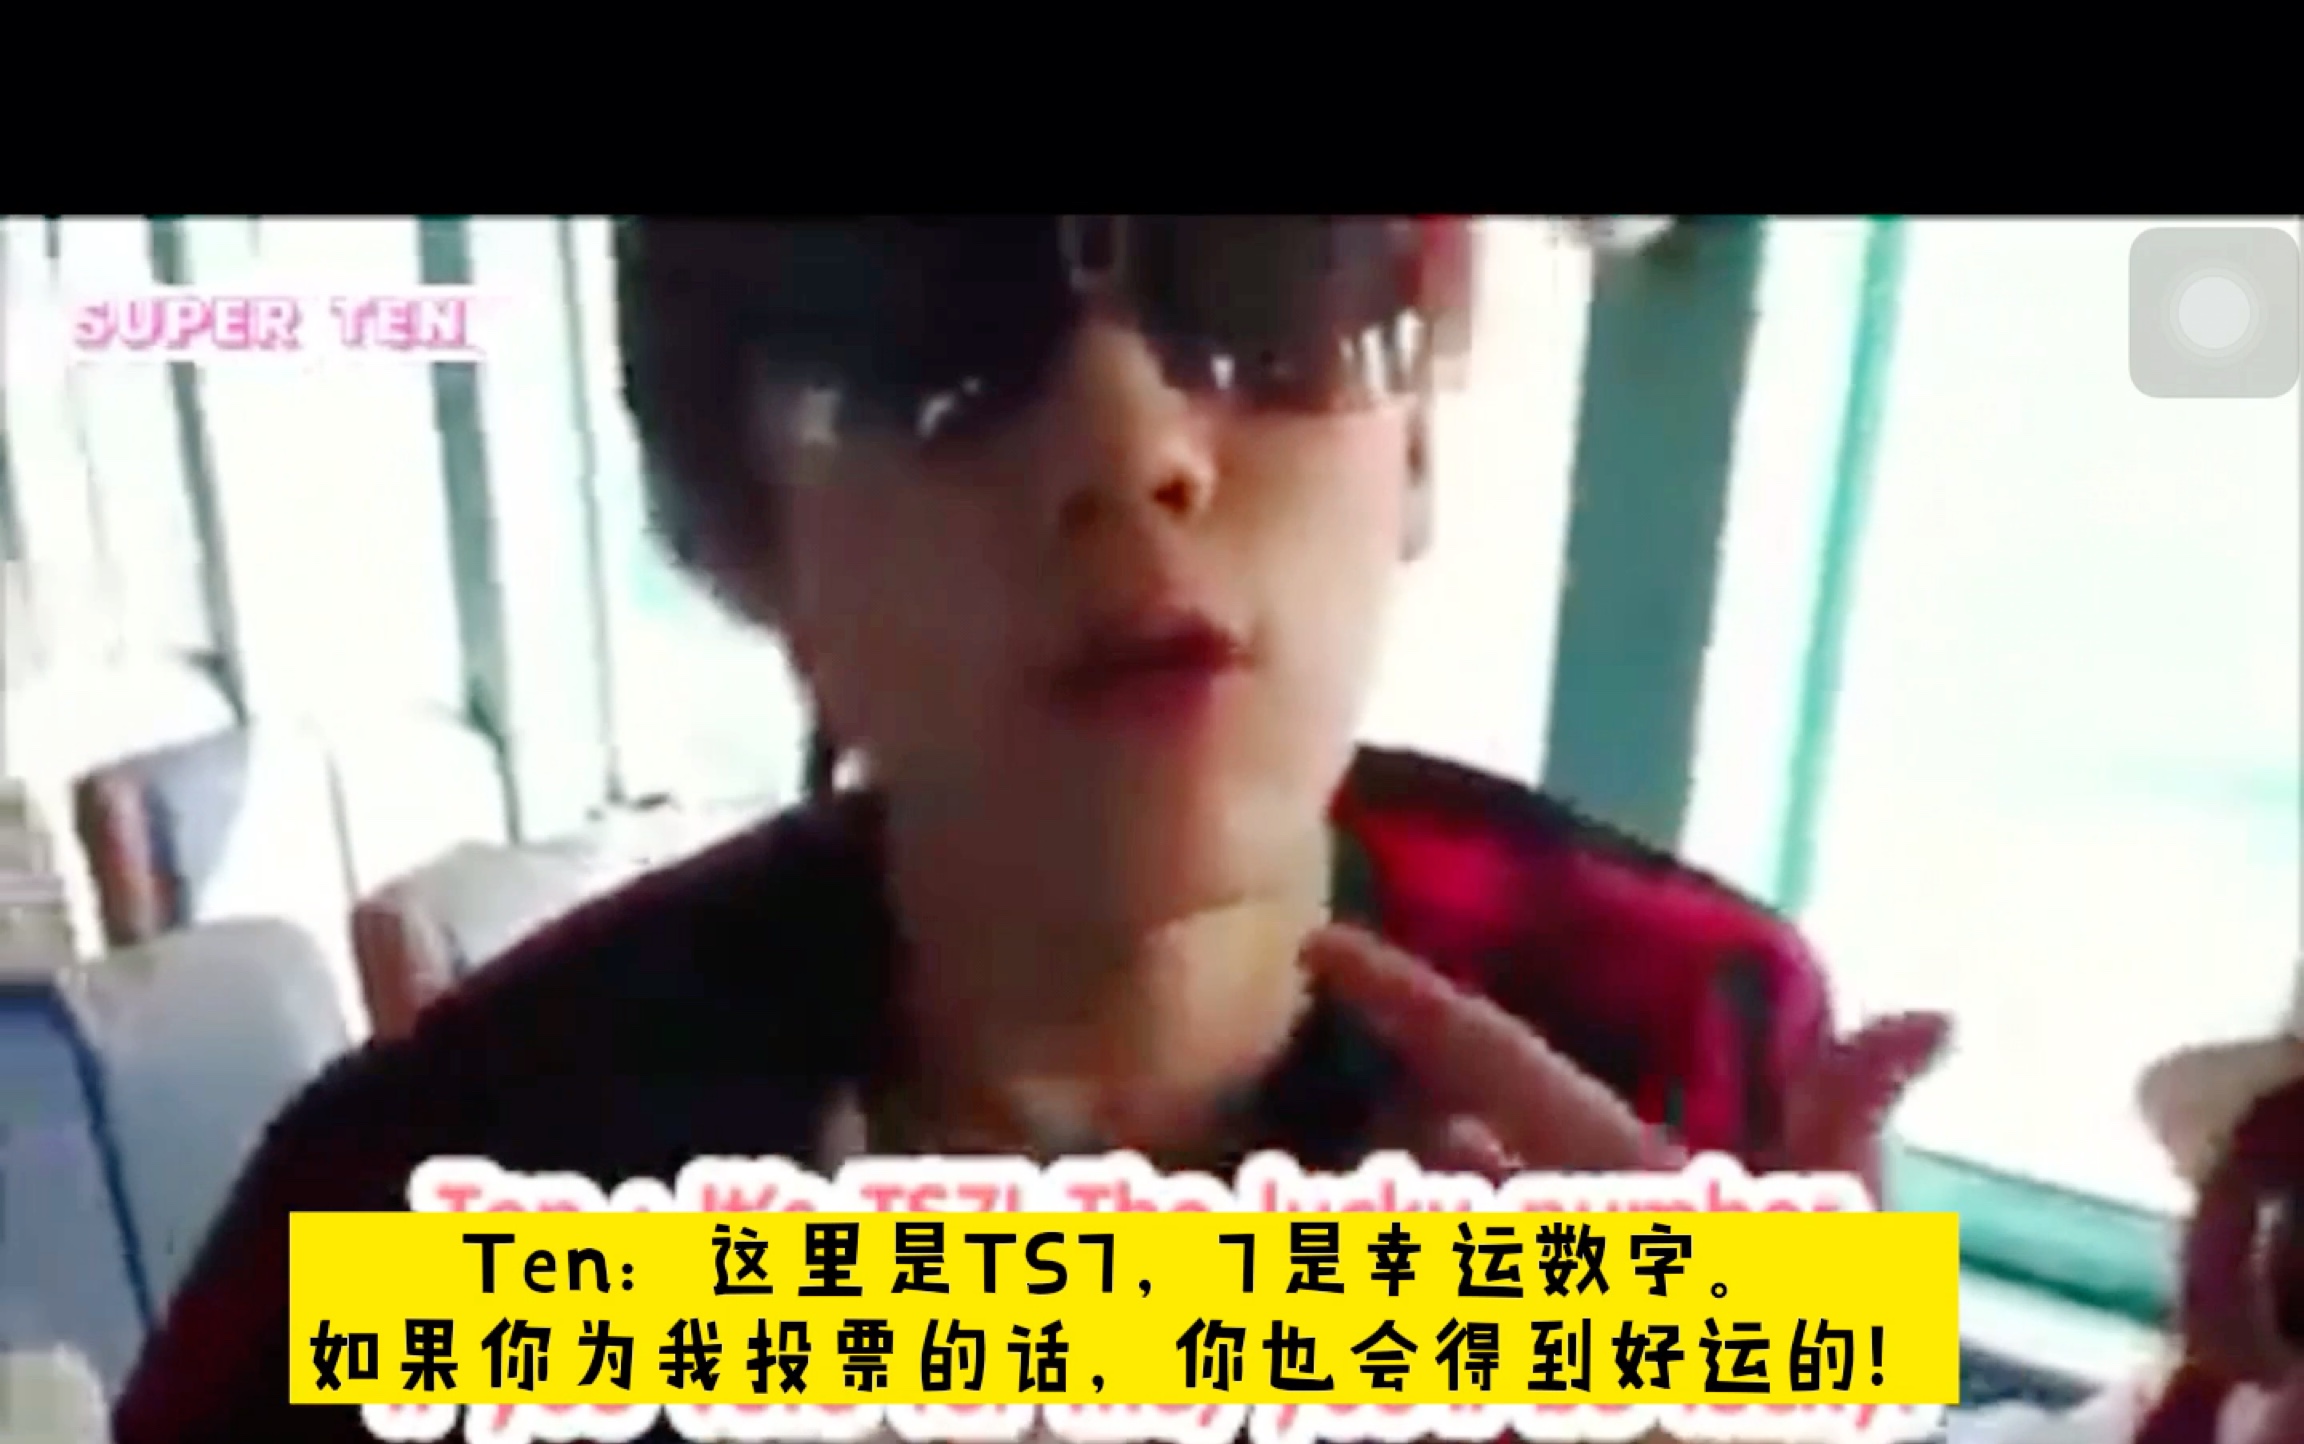 【中文字幕】【李永钦/Ten】大明星TNT告诉你必须要为他投票的理由！